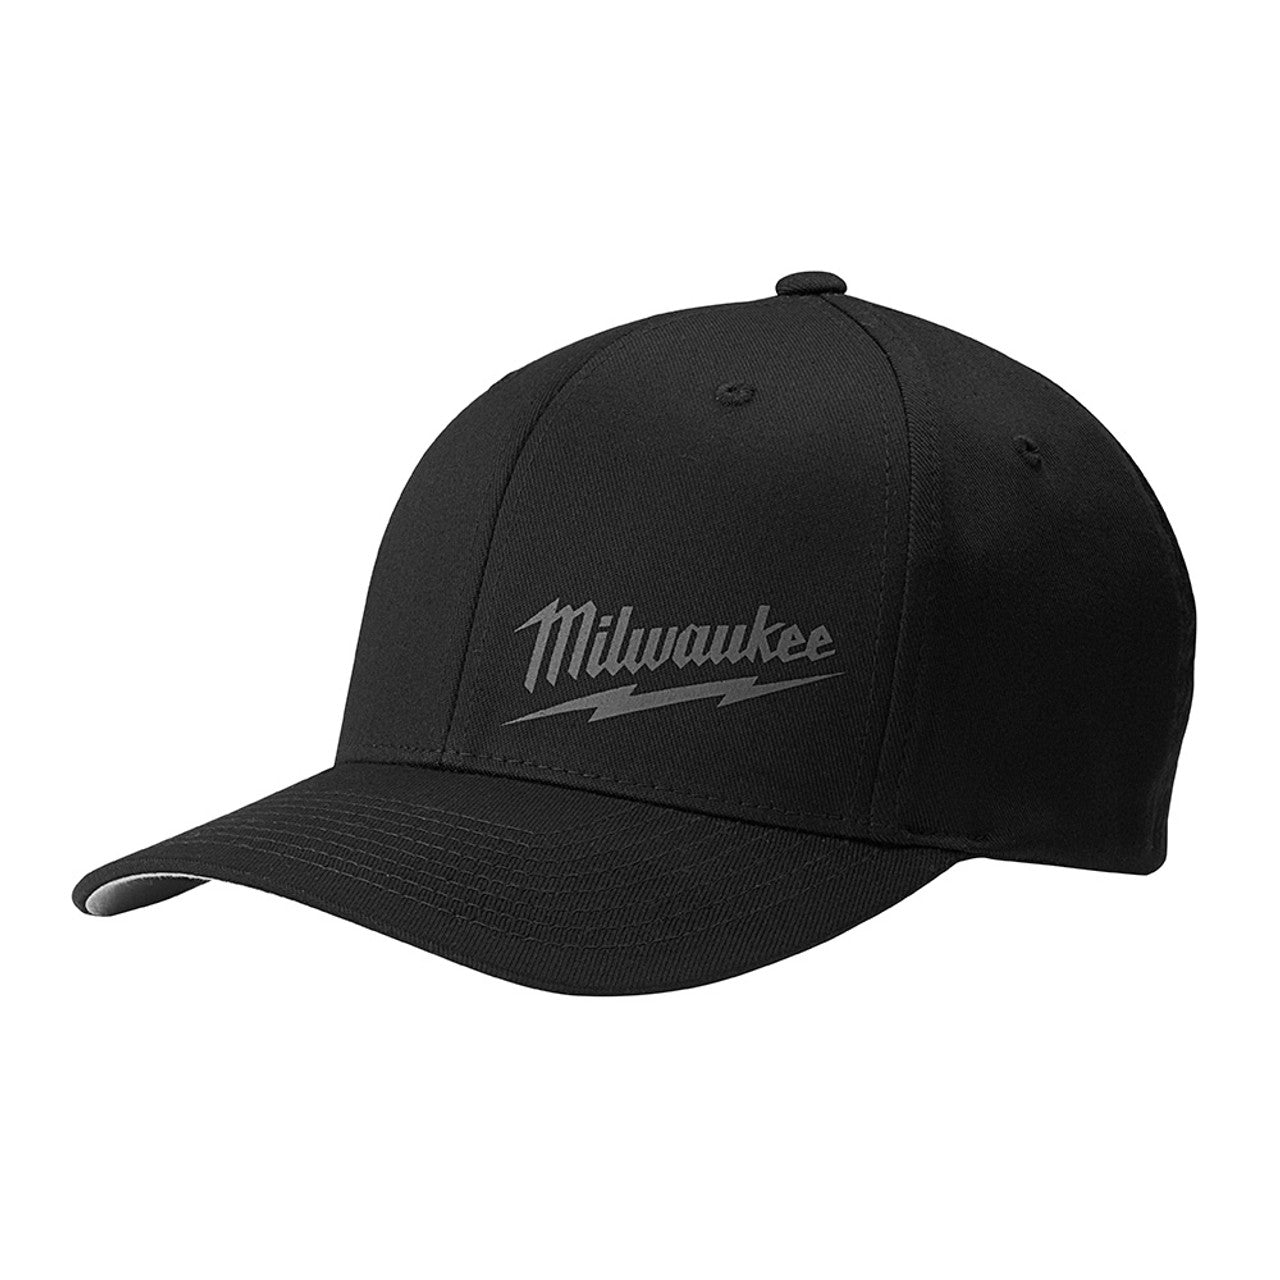 Milwaukee 504B-LXL Fitted Hat, Black L/XL - MPR Tools & Equipment